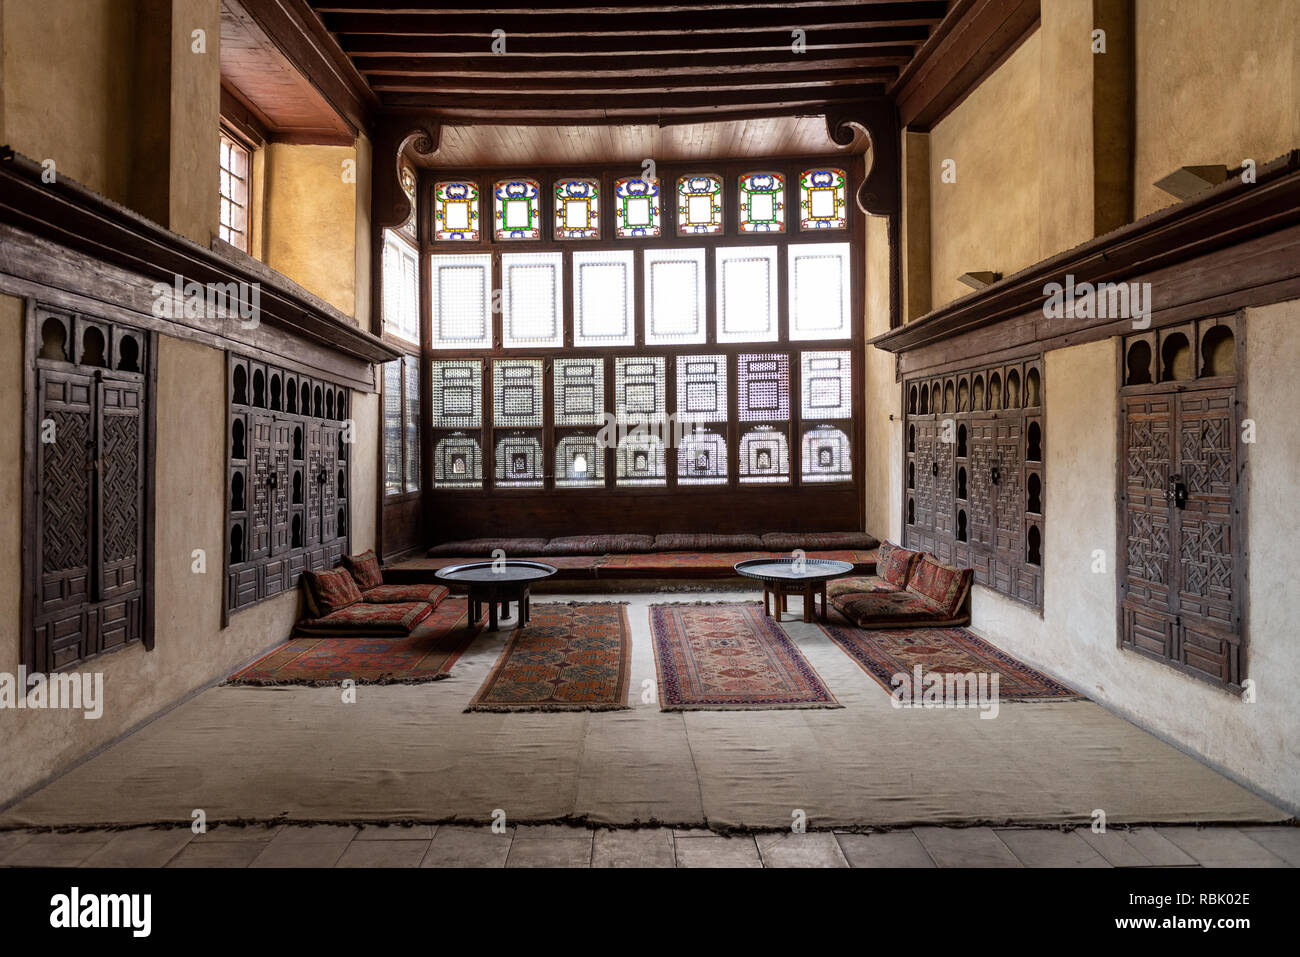 Salle intérieure avec mashrabiya windows dans la chambre de Bayt, Al-Suhaymi Suhaymi, est une ancienne maison-musée de l'ère ottomane au Caire islamique, l'Egypte. C'est ori Banque D'Images